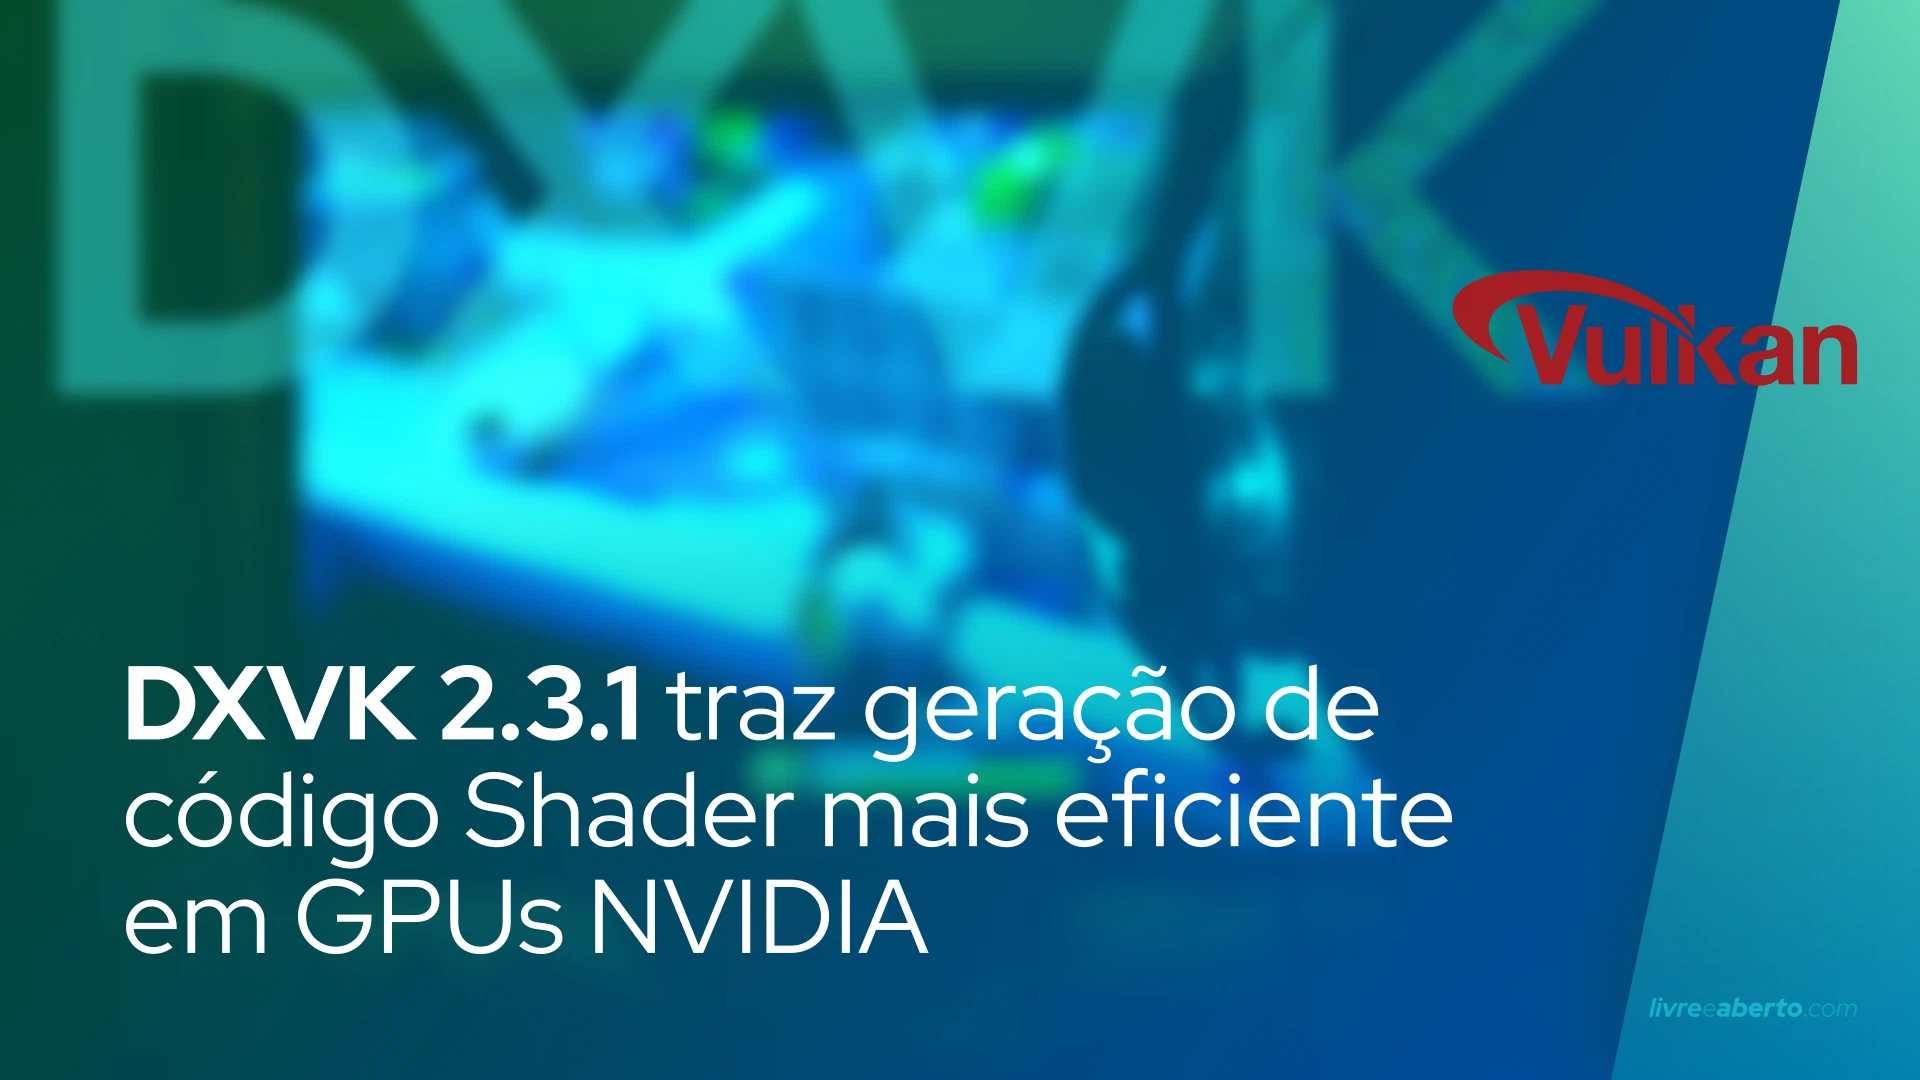 DXVK 2.3.1 traz geração de código Shader mais eficiente em GPUs NVIDIA